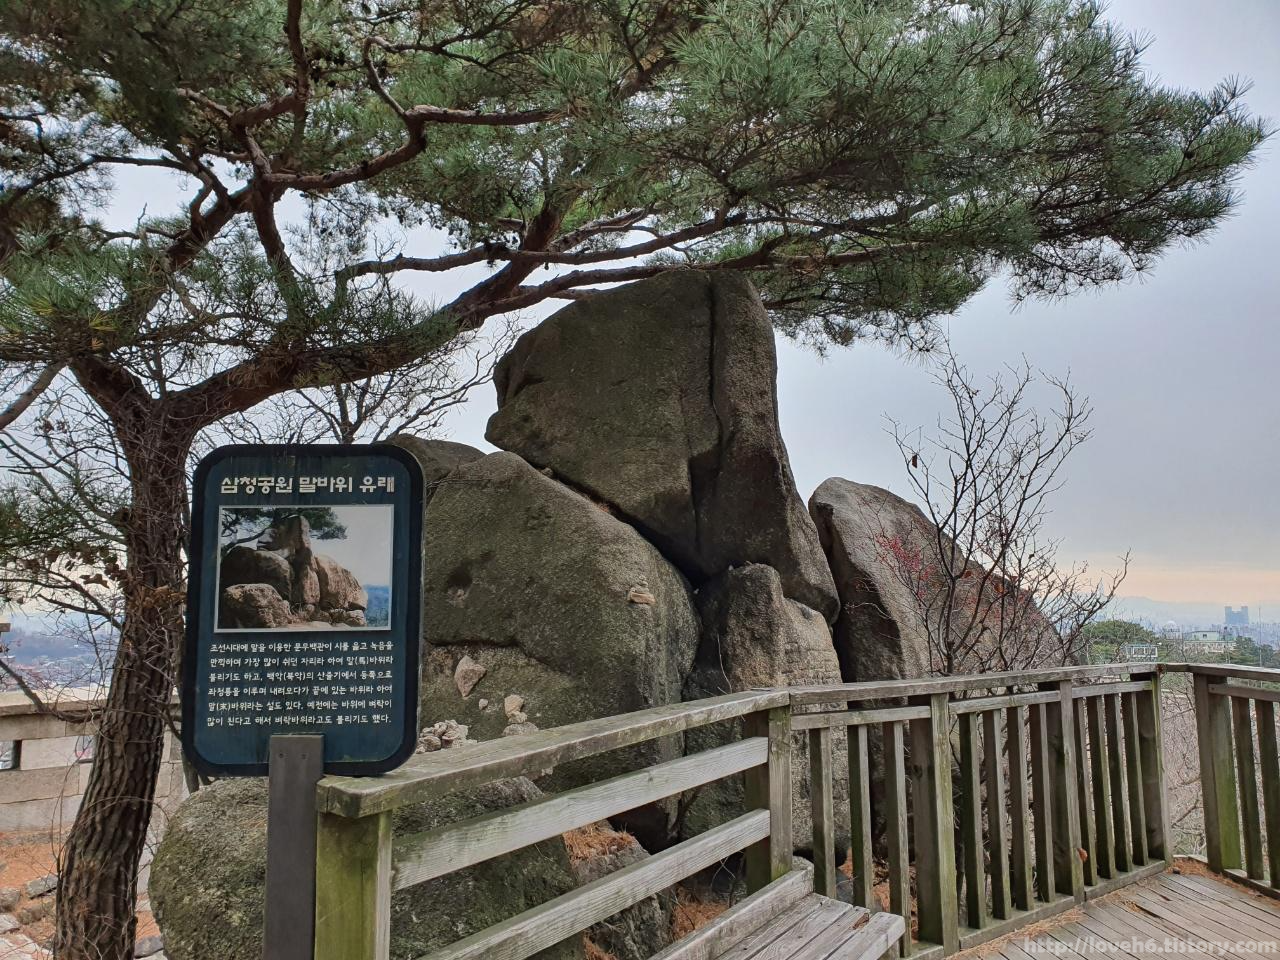 북악산_北岳山_Bukaksan/삼청공원 말바위 유래

설명서 표지판 뒤에 말바위가 보이네요